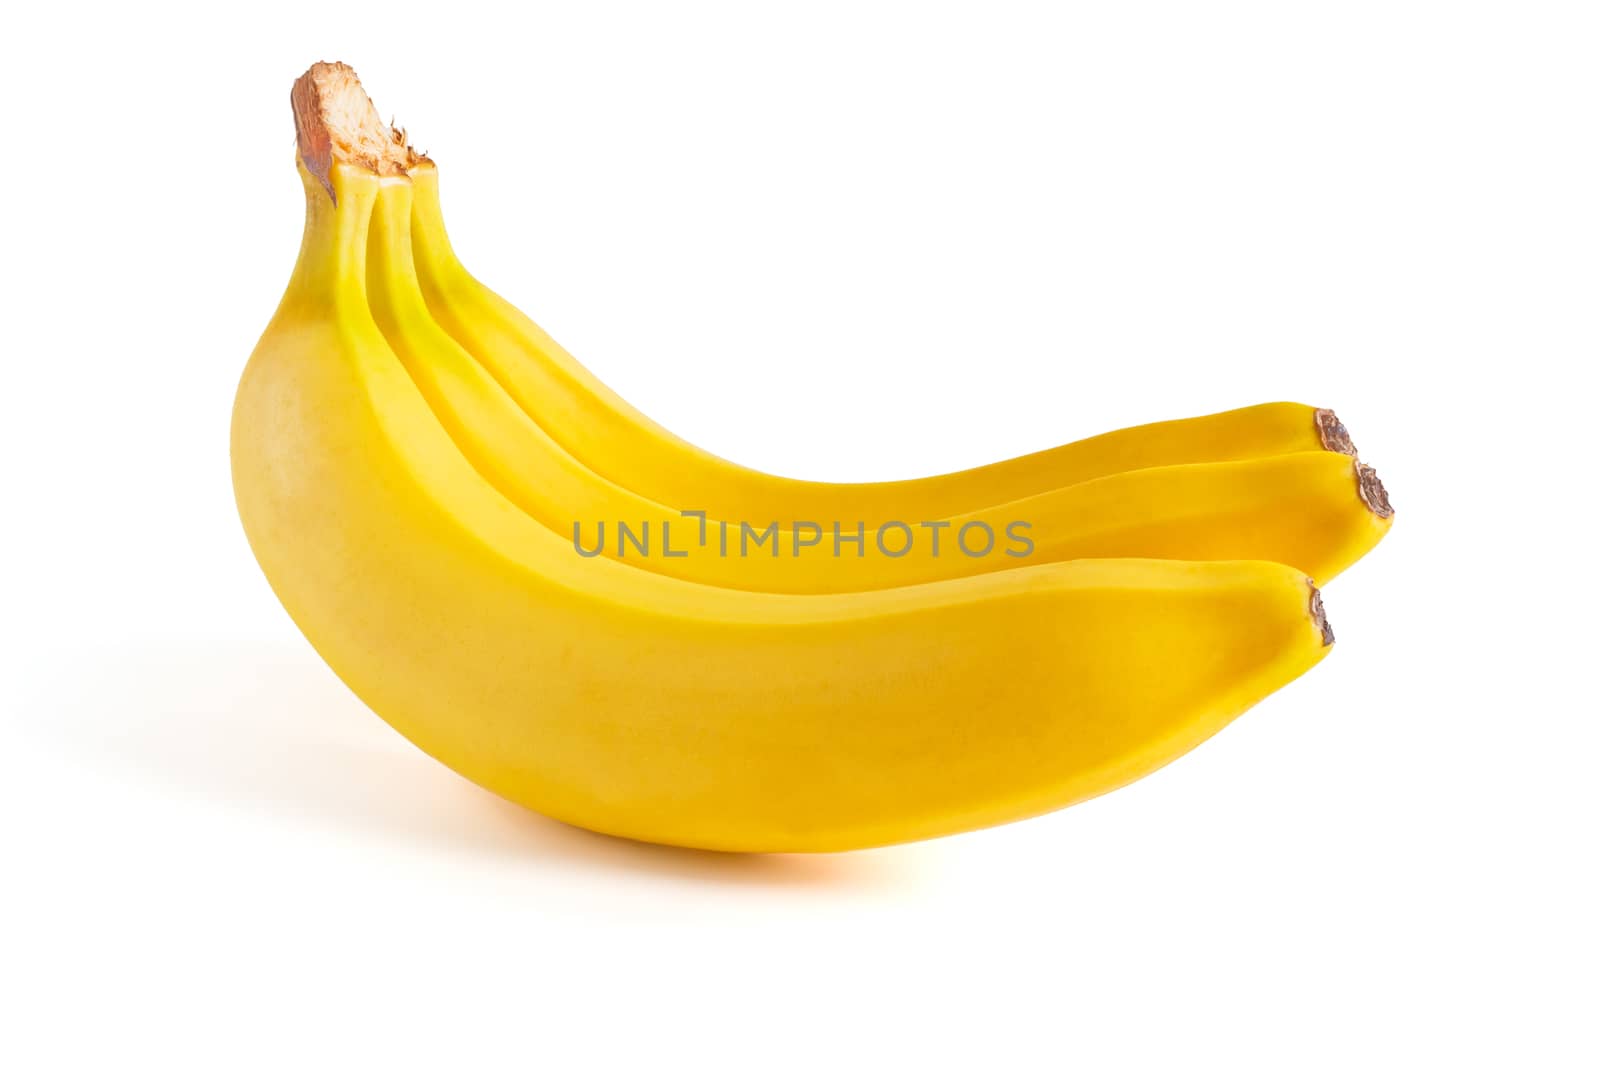 three bananas by pilotL39